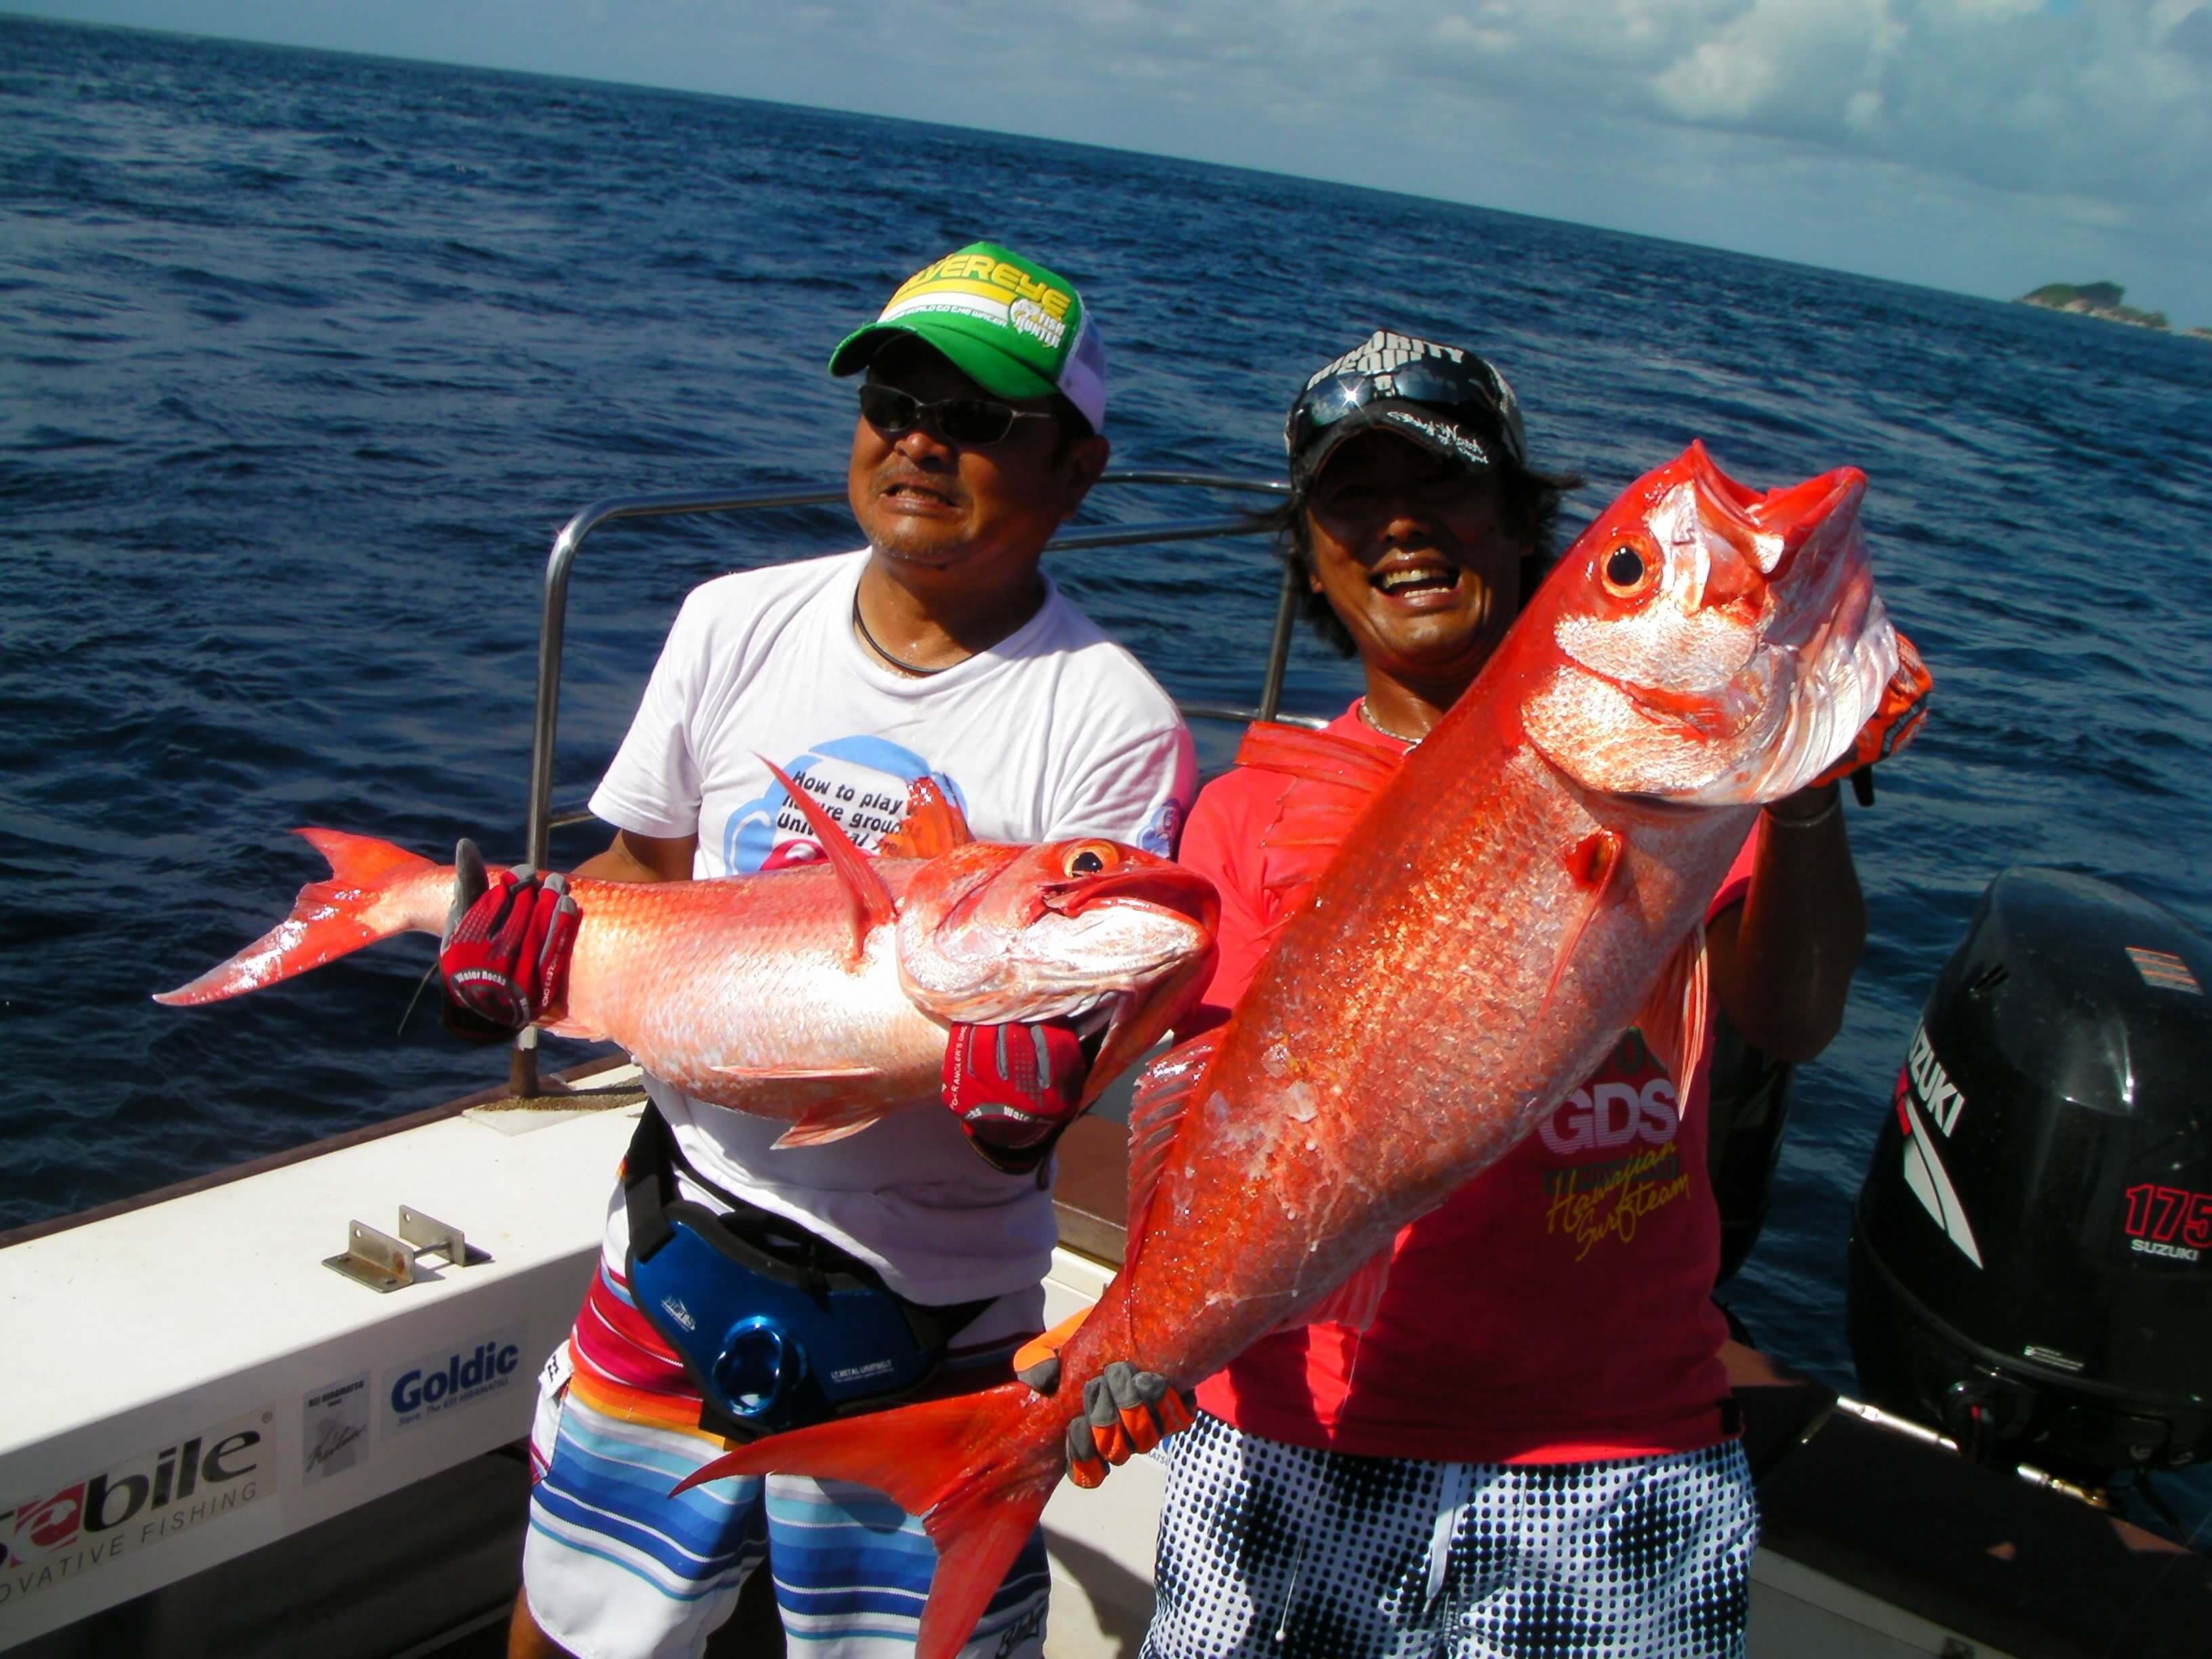 اصطاد السائح سمكتين من أسماك البوري الأحمر في جولة صيد في هيكادوا بسريلانكا